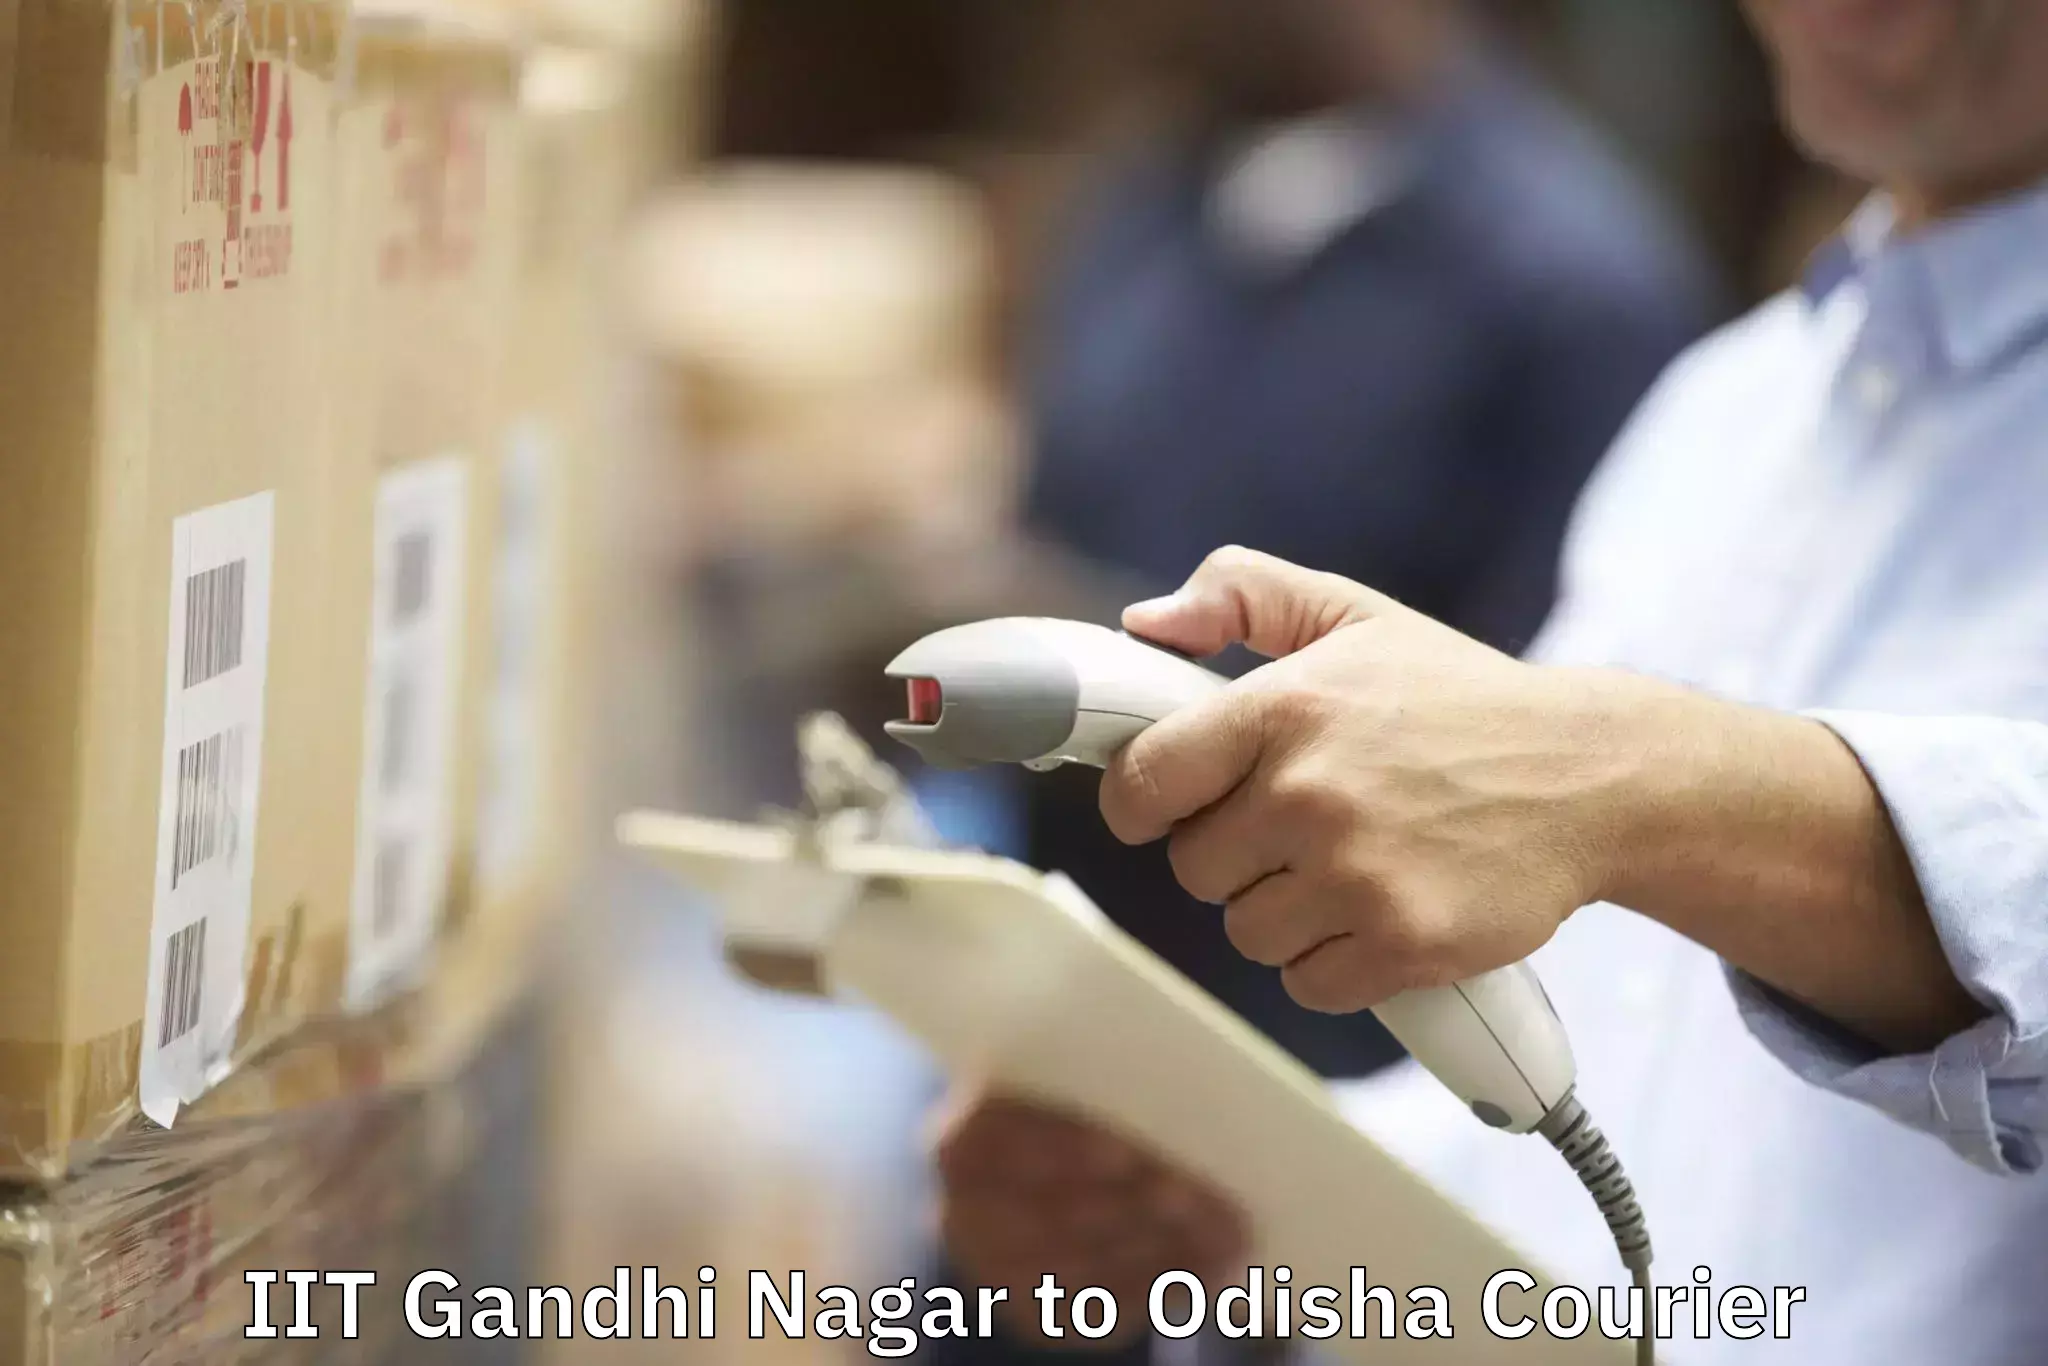 Furniture delivery service IIT Gandhi Nagar to Junagarh Kalahandi